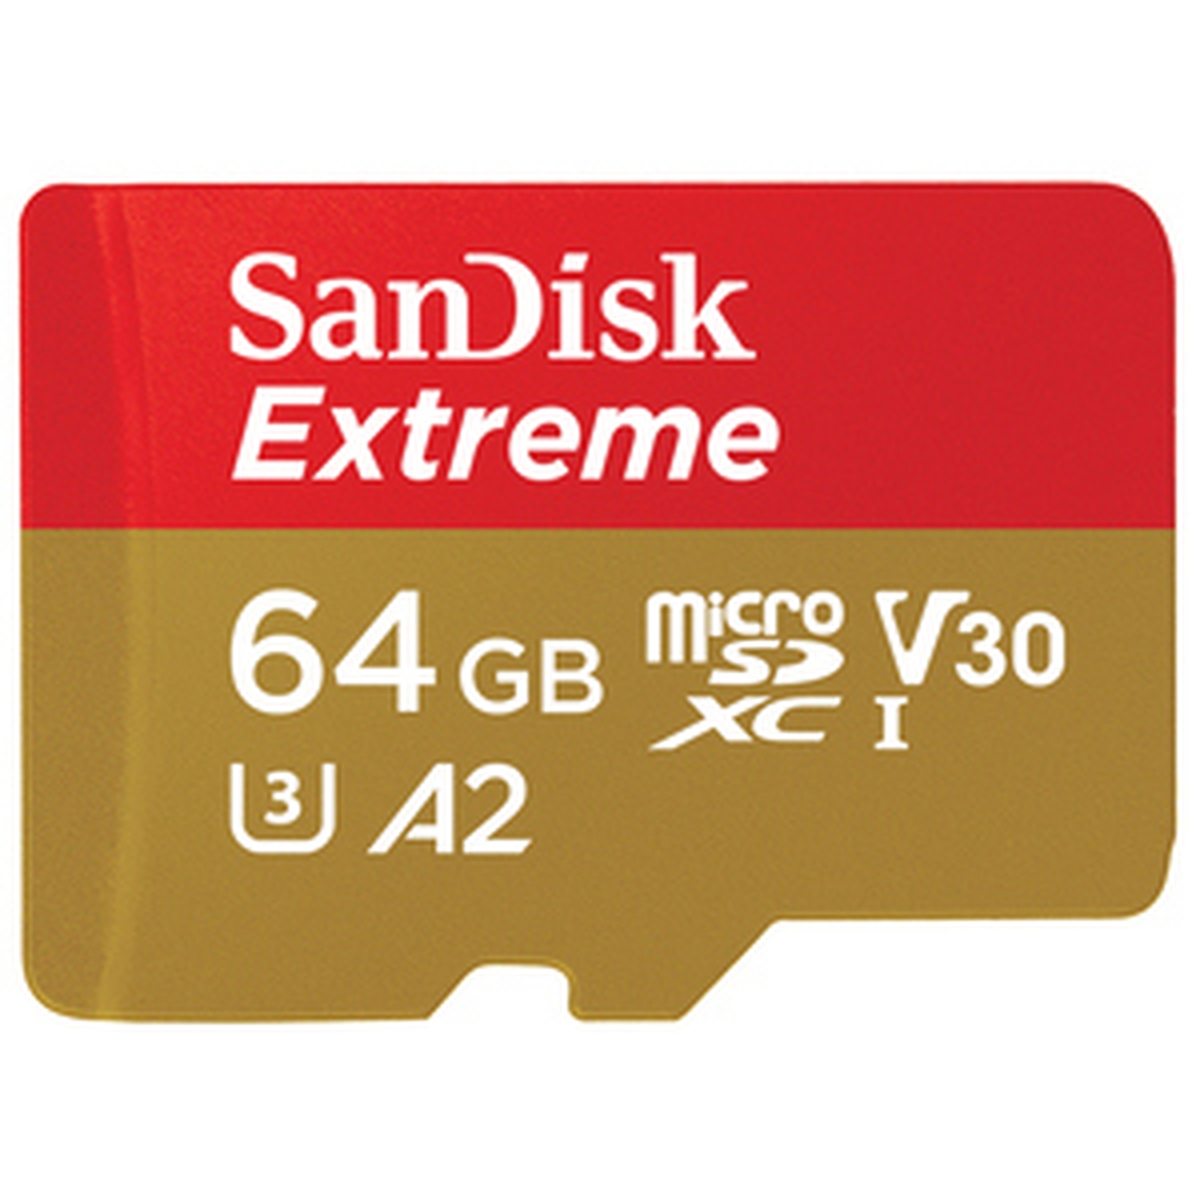 SanDisk Extreme 64 GB microSDXC 170 MB/s 